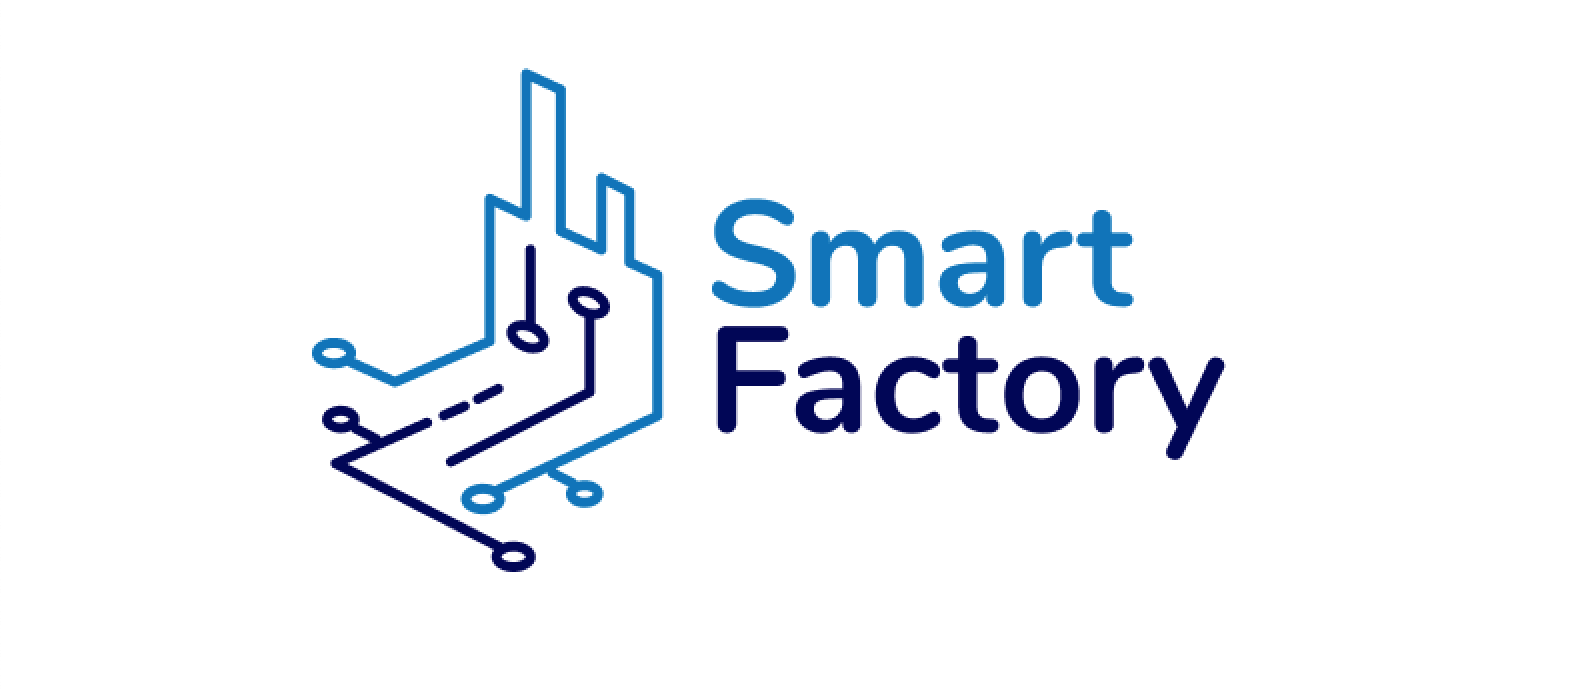 Smart Factory là gì?